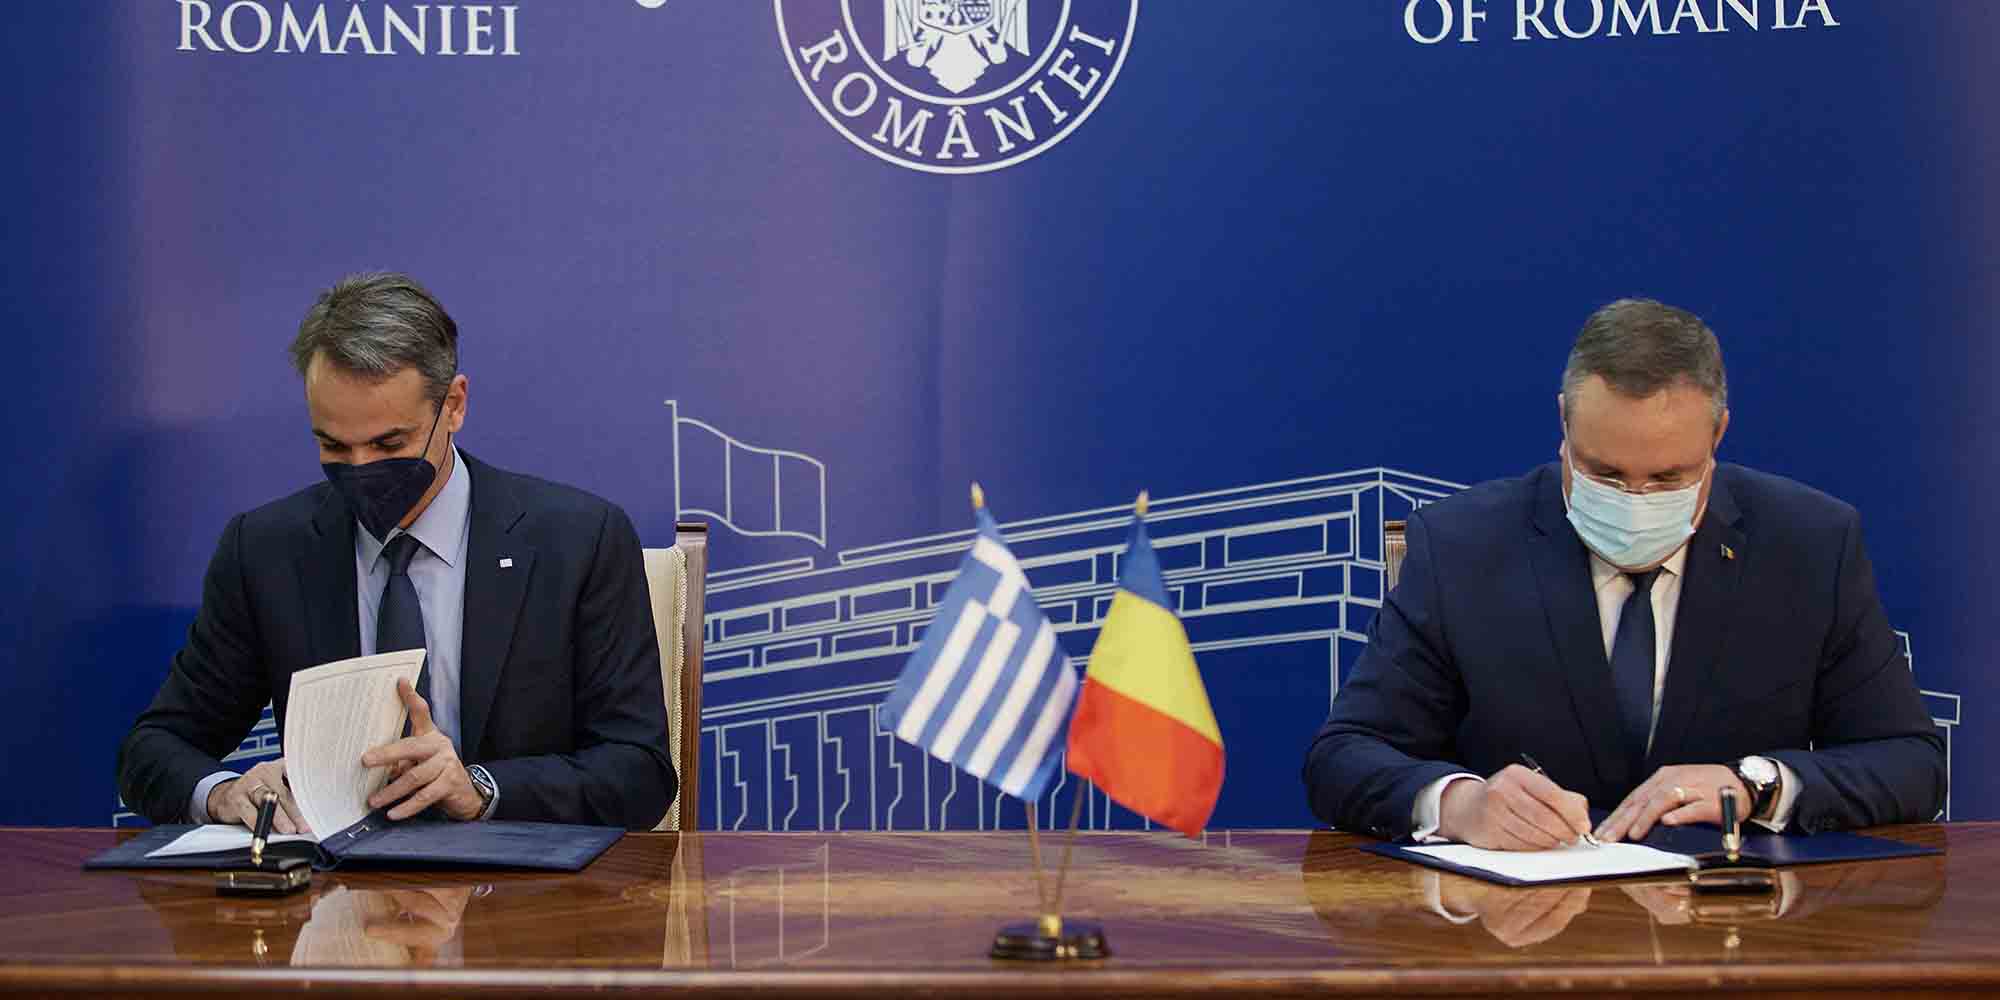 Κυριάκος Μητσοτάκης και Νικολάε Τσιούκα, υπέγραψαν Κοινή Διακήρυξη για την περαιτέρω προώθηση της διμερούς οικονομικής και πολιτικής συνεργασίας Ελλάδας-Ρουμανίας